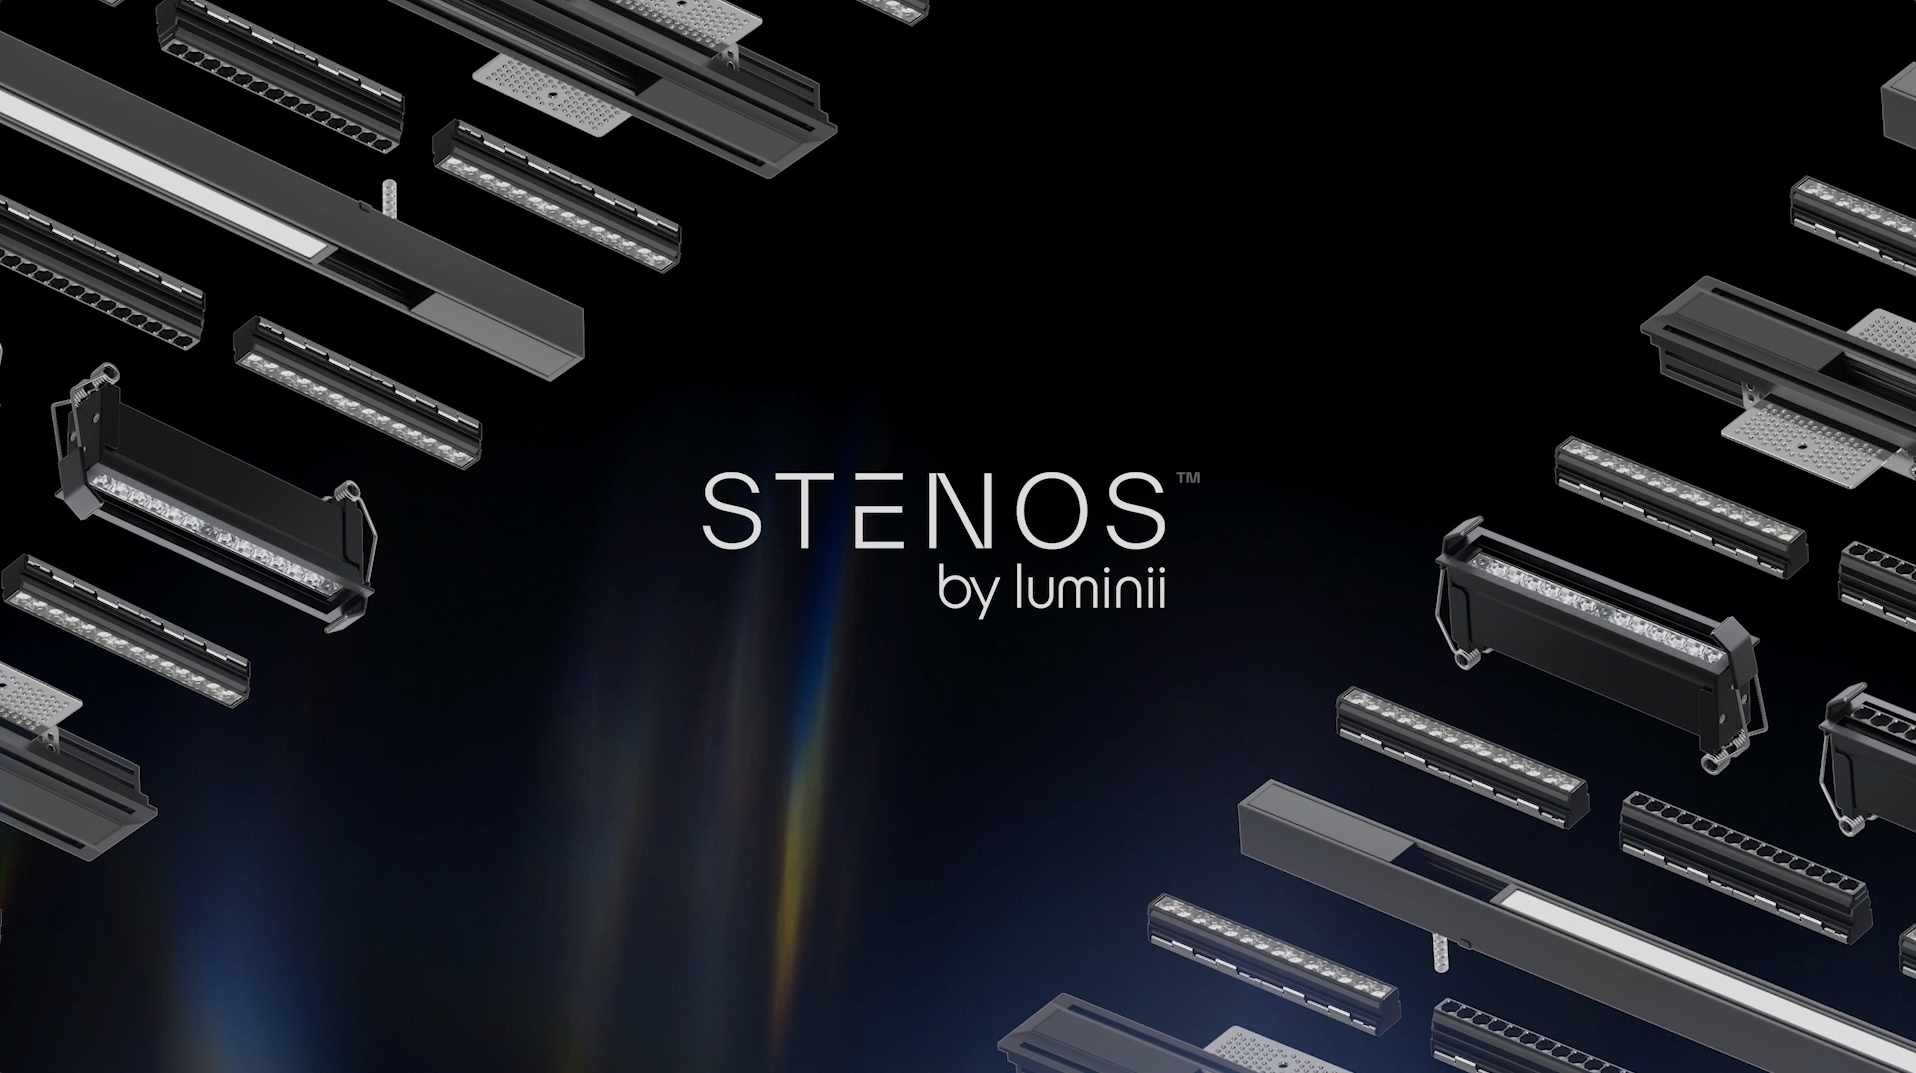 STENOS Video Still 1